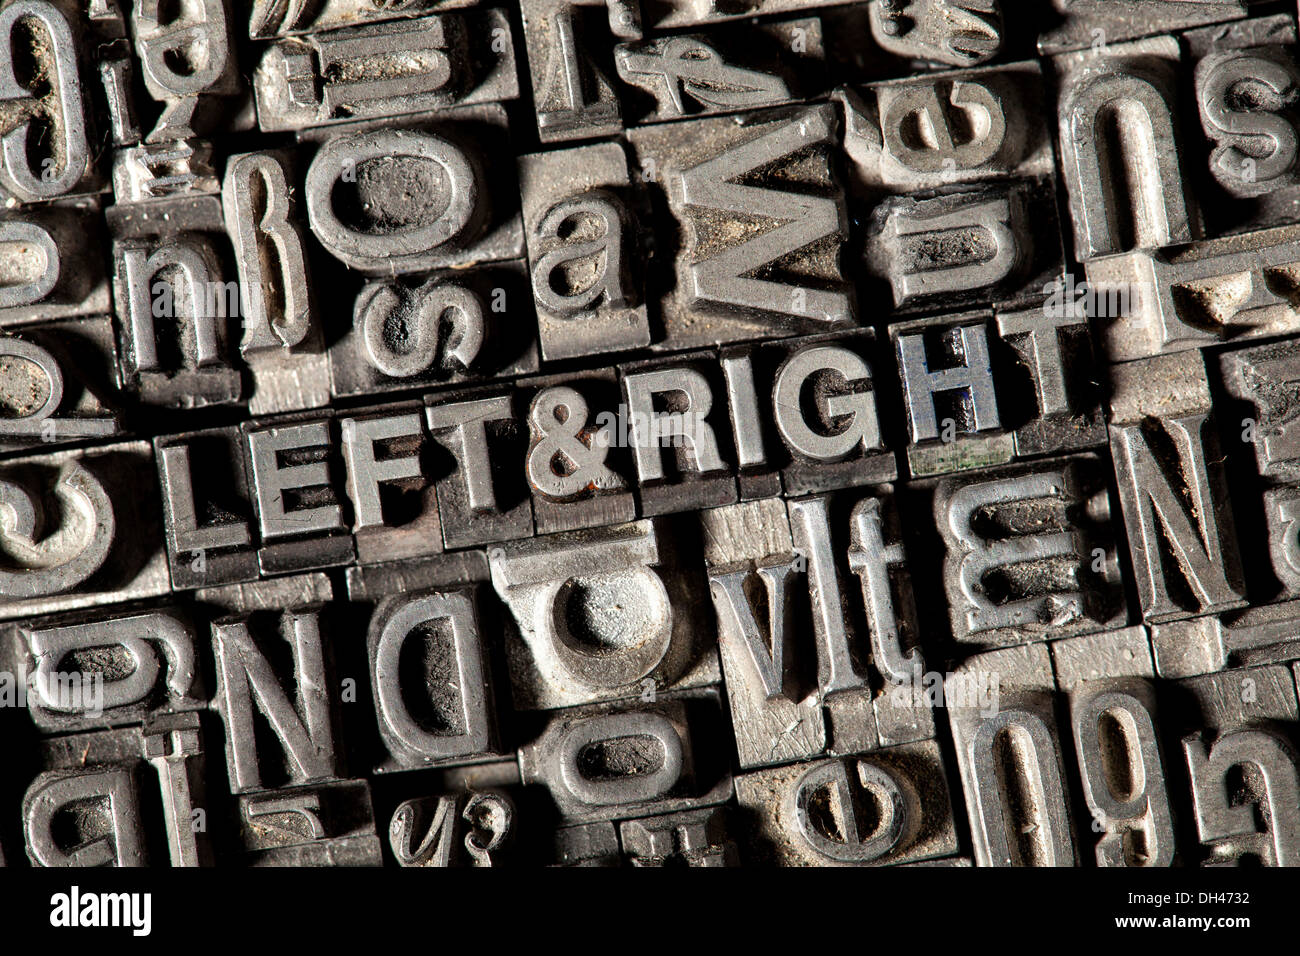 Alten führen Buchstaben bilden die Worte "Links & Recht" Stockfoto